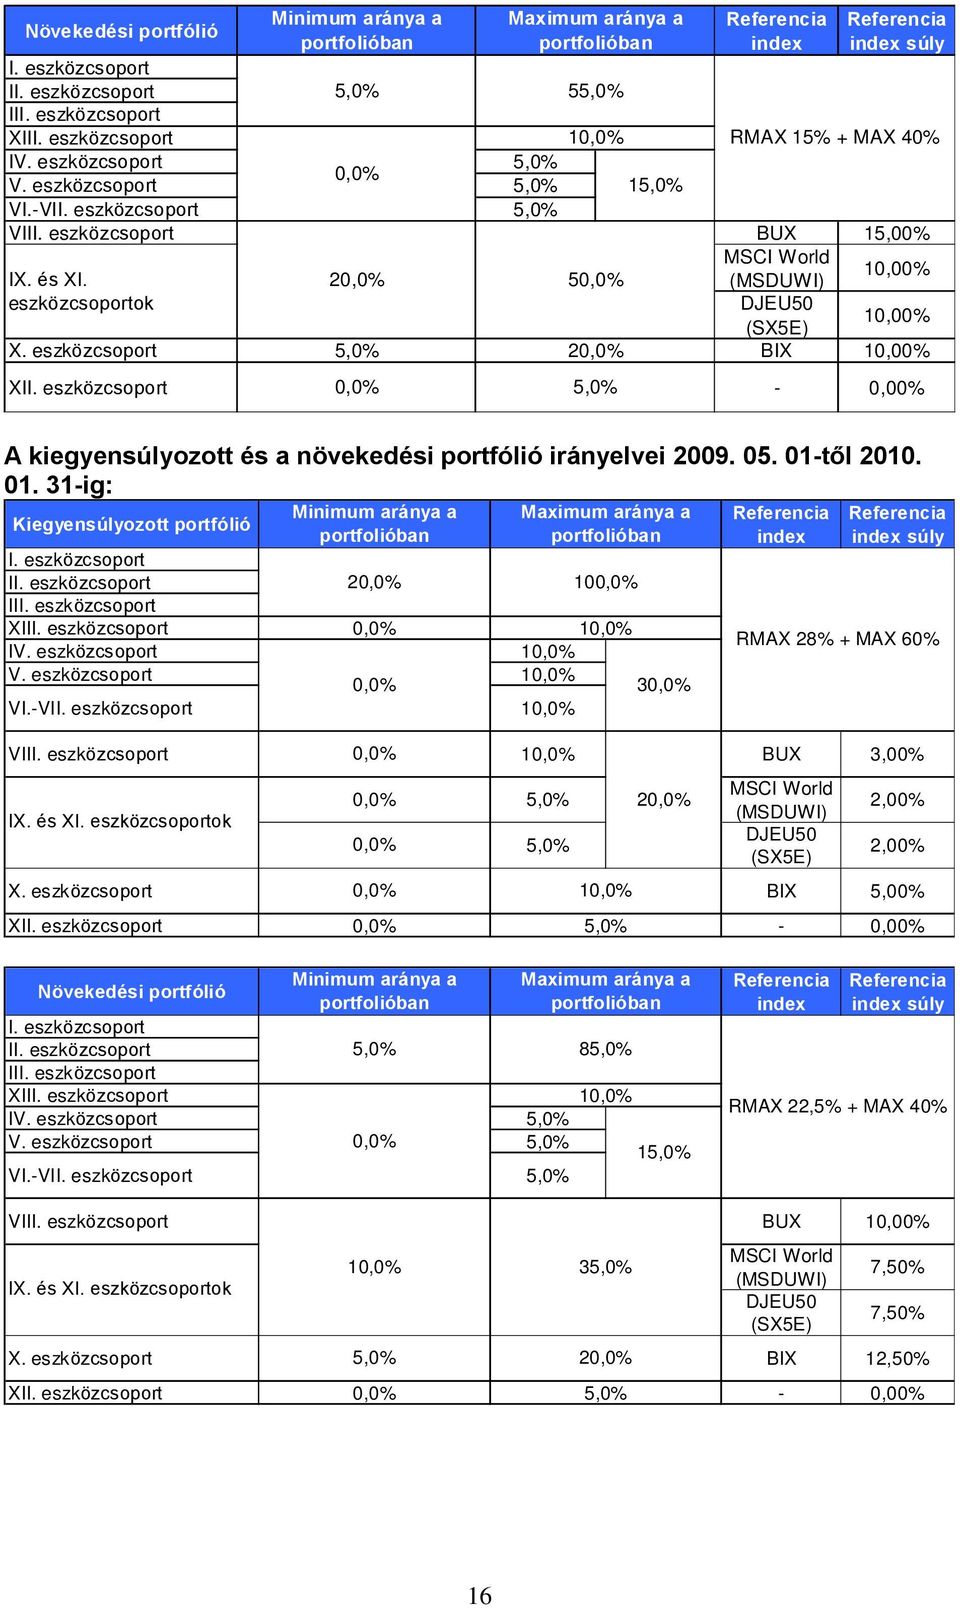 2 5 (MSDUWI) 10,00% eszközcsoportok DJEU50 (SX5E) 10,00% X. eszközcsoport 5,0% 2 BIX 10,00% XII. eszközcsoport 5,0% - 0,00% A kiegyensúlyozott és a növekedési portfólió irányelvei 2009. 05.